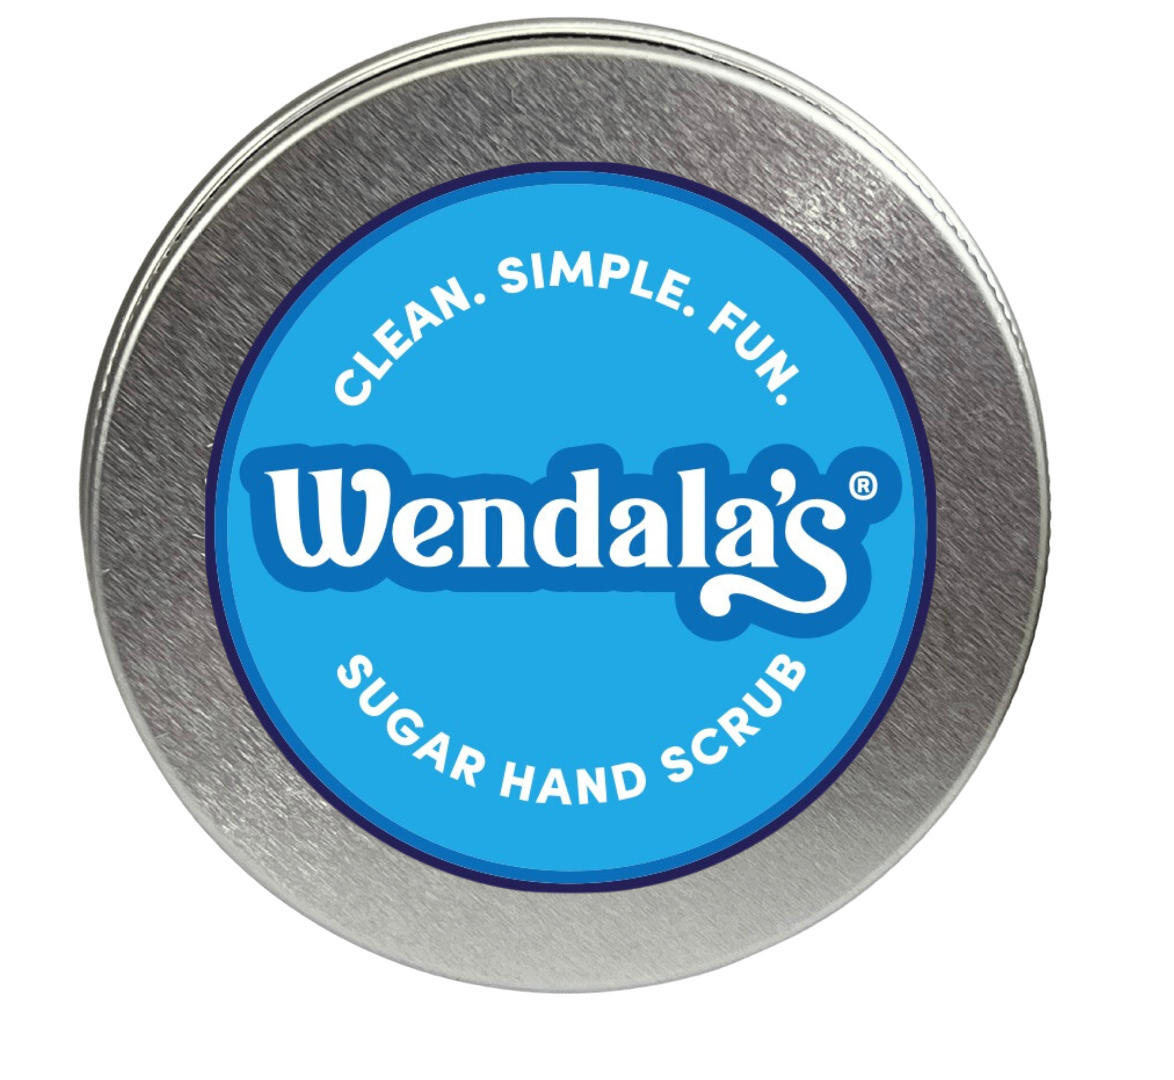 Wendala's LowCountry Sugar Scrub, LLC, Bluffton SC